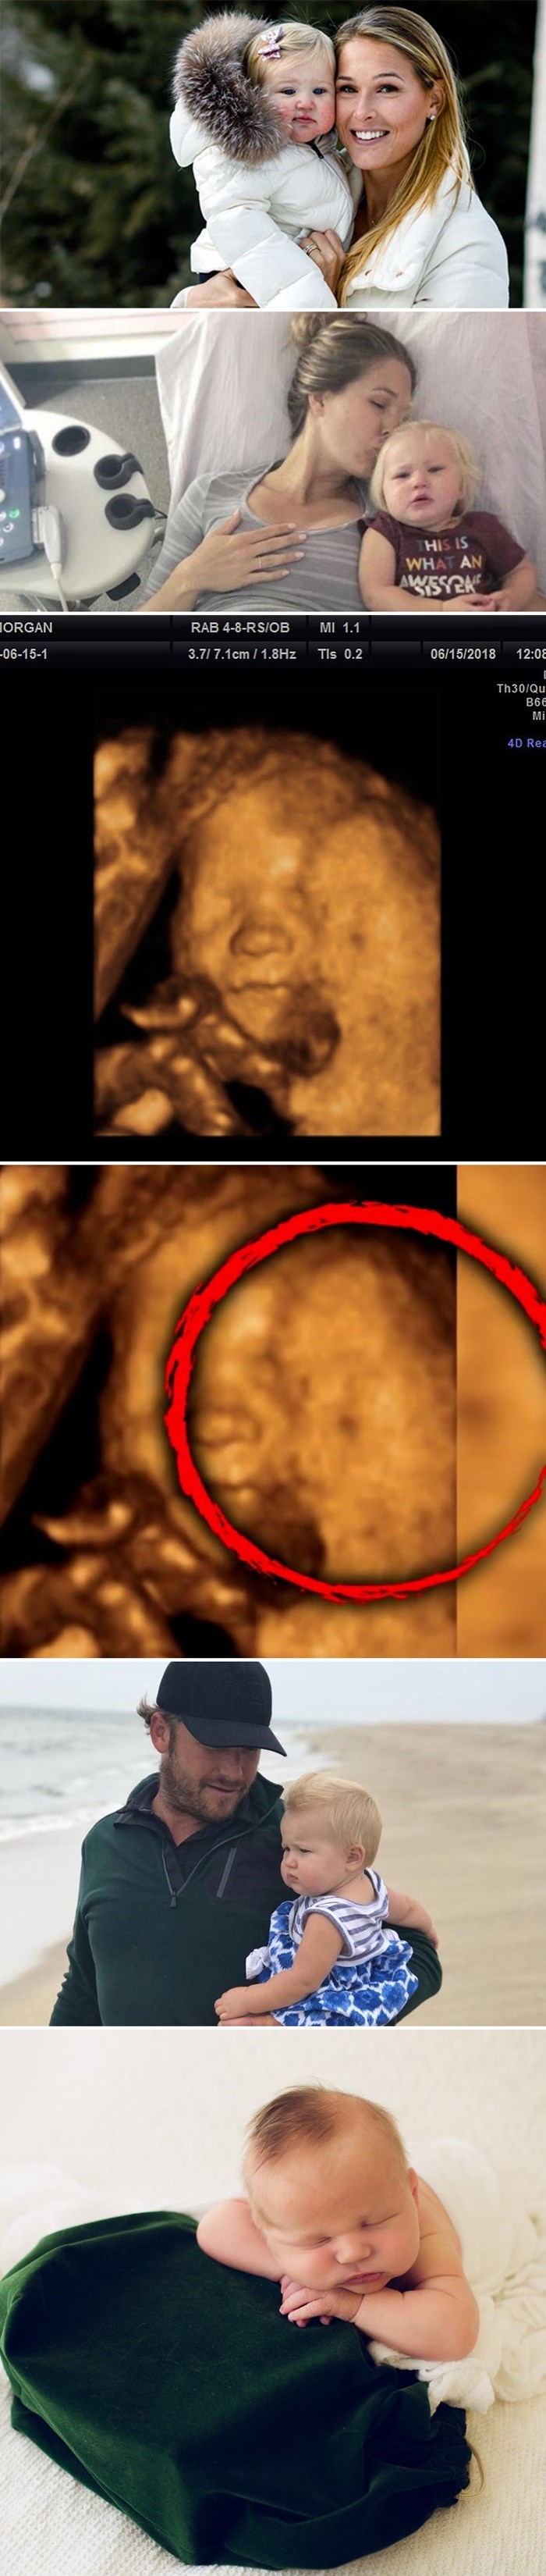 Samo nekoliko dana nakon što je ostala bez kćerkice, mama je na ultrazvuku primijetila čudan detalj